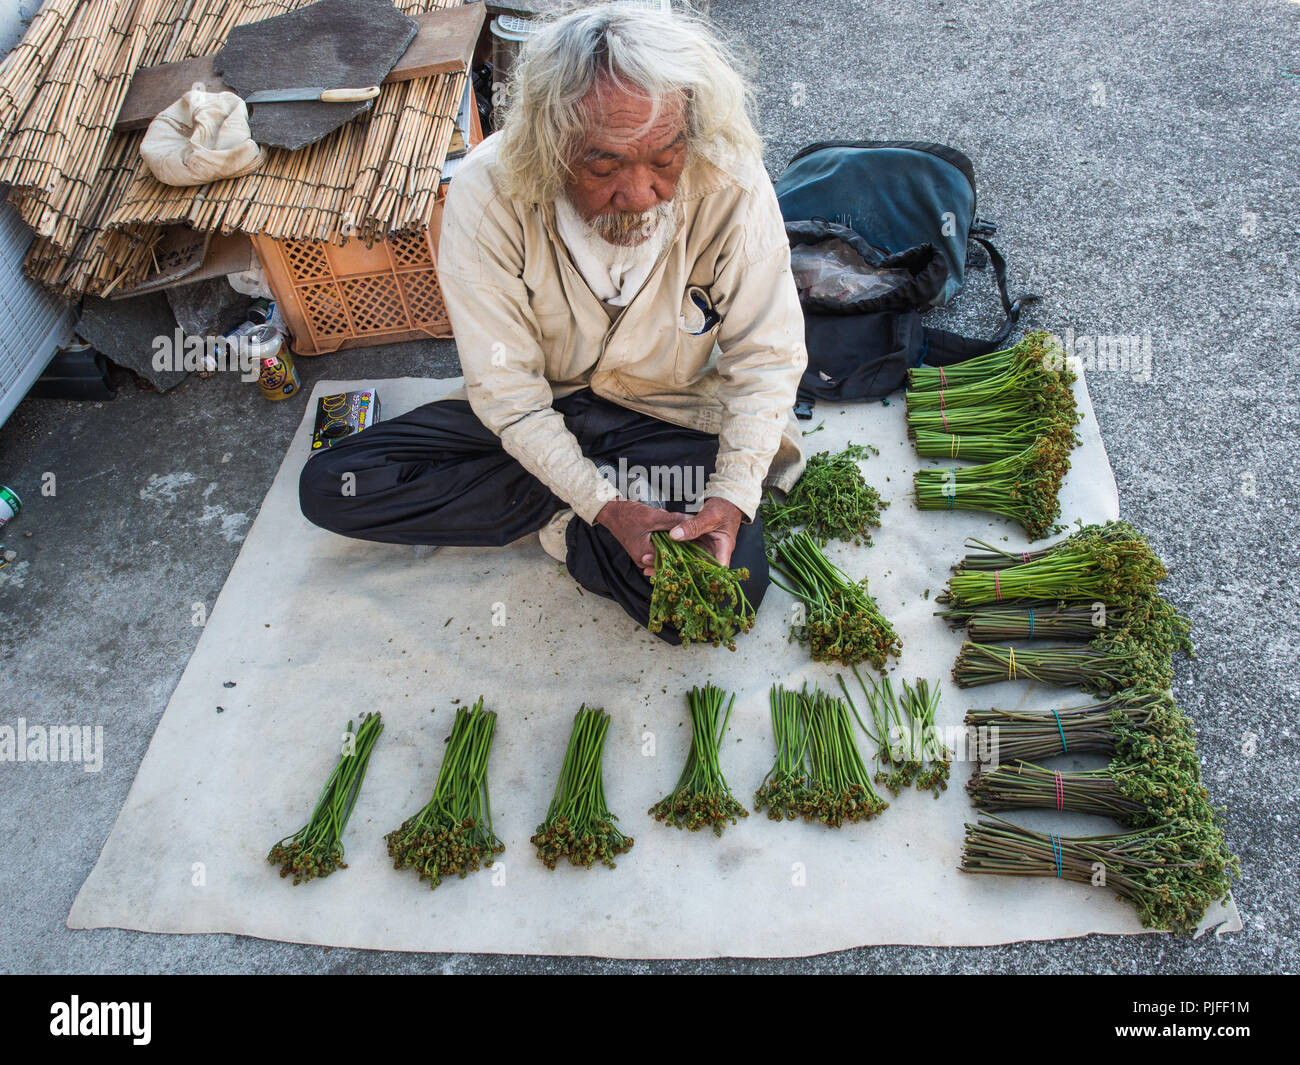 Man preparing sansai warabi, wild mountain vegetables, Ehime, Shikoku, Japan Stock Photo